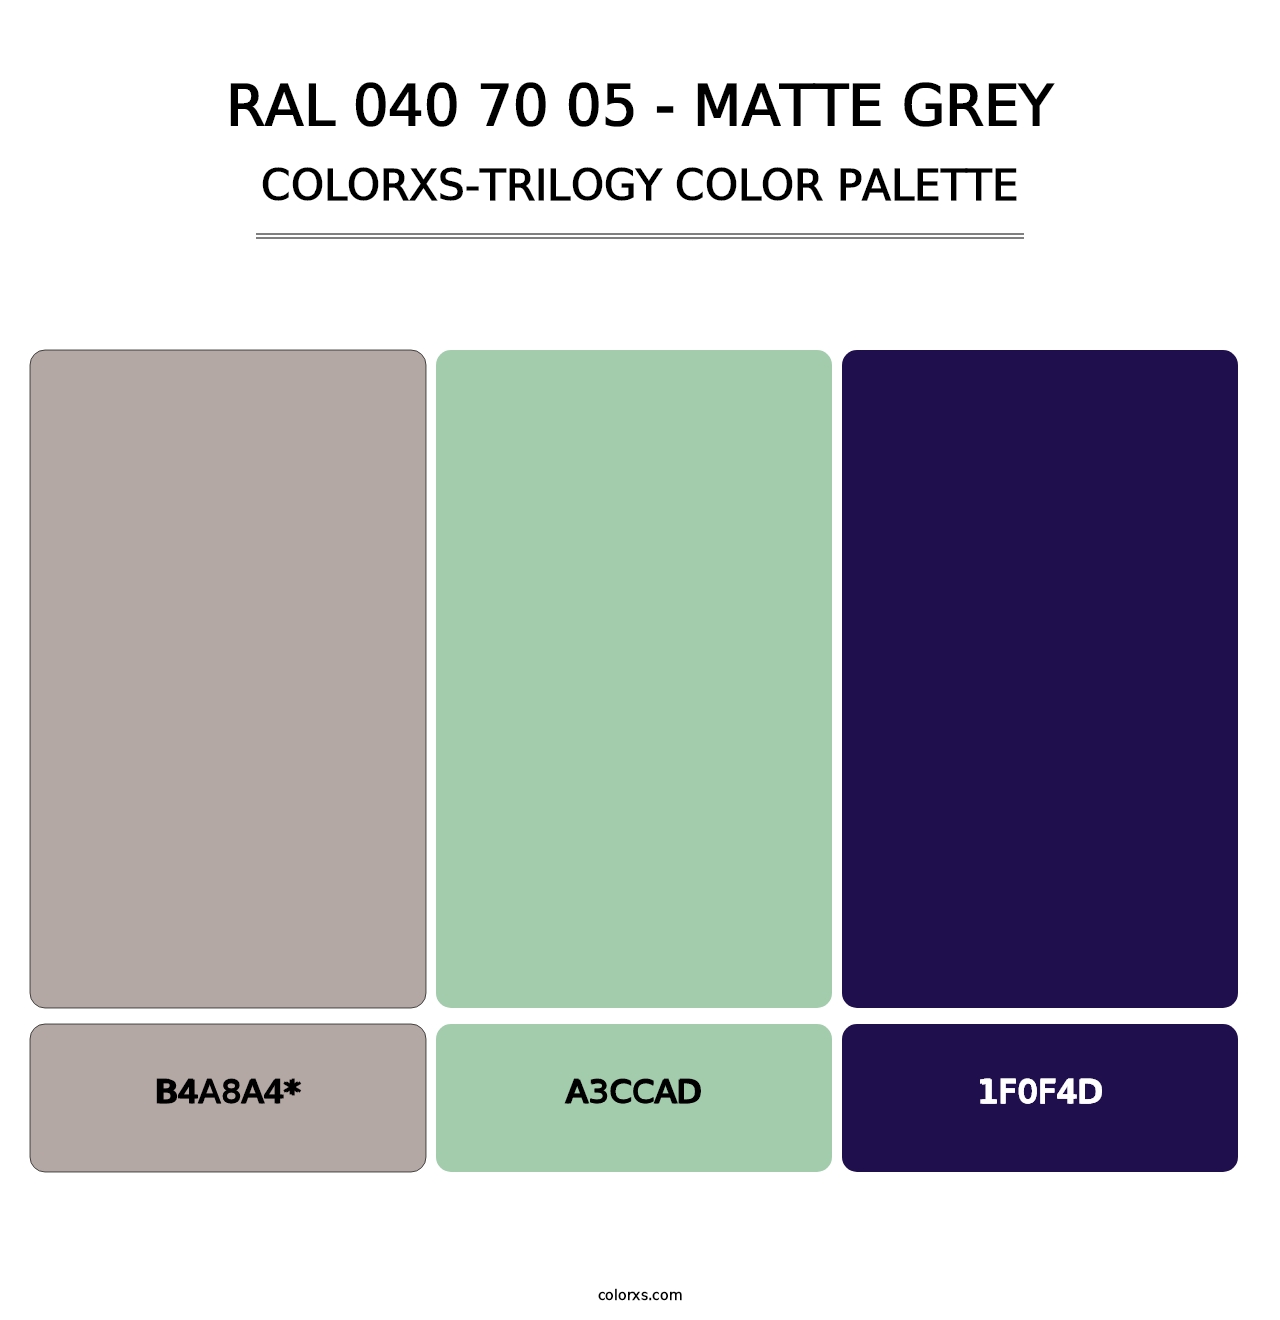 RAL 040 70 05 - Matte Grey - Colorxs Trilogy Palette